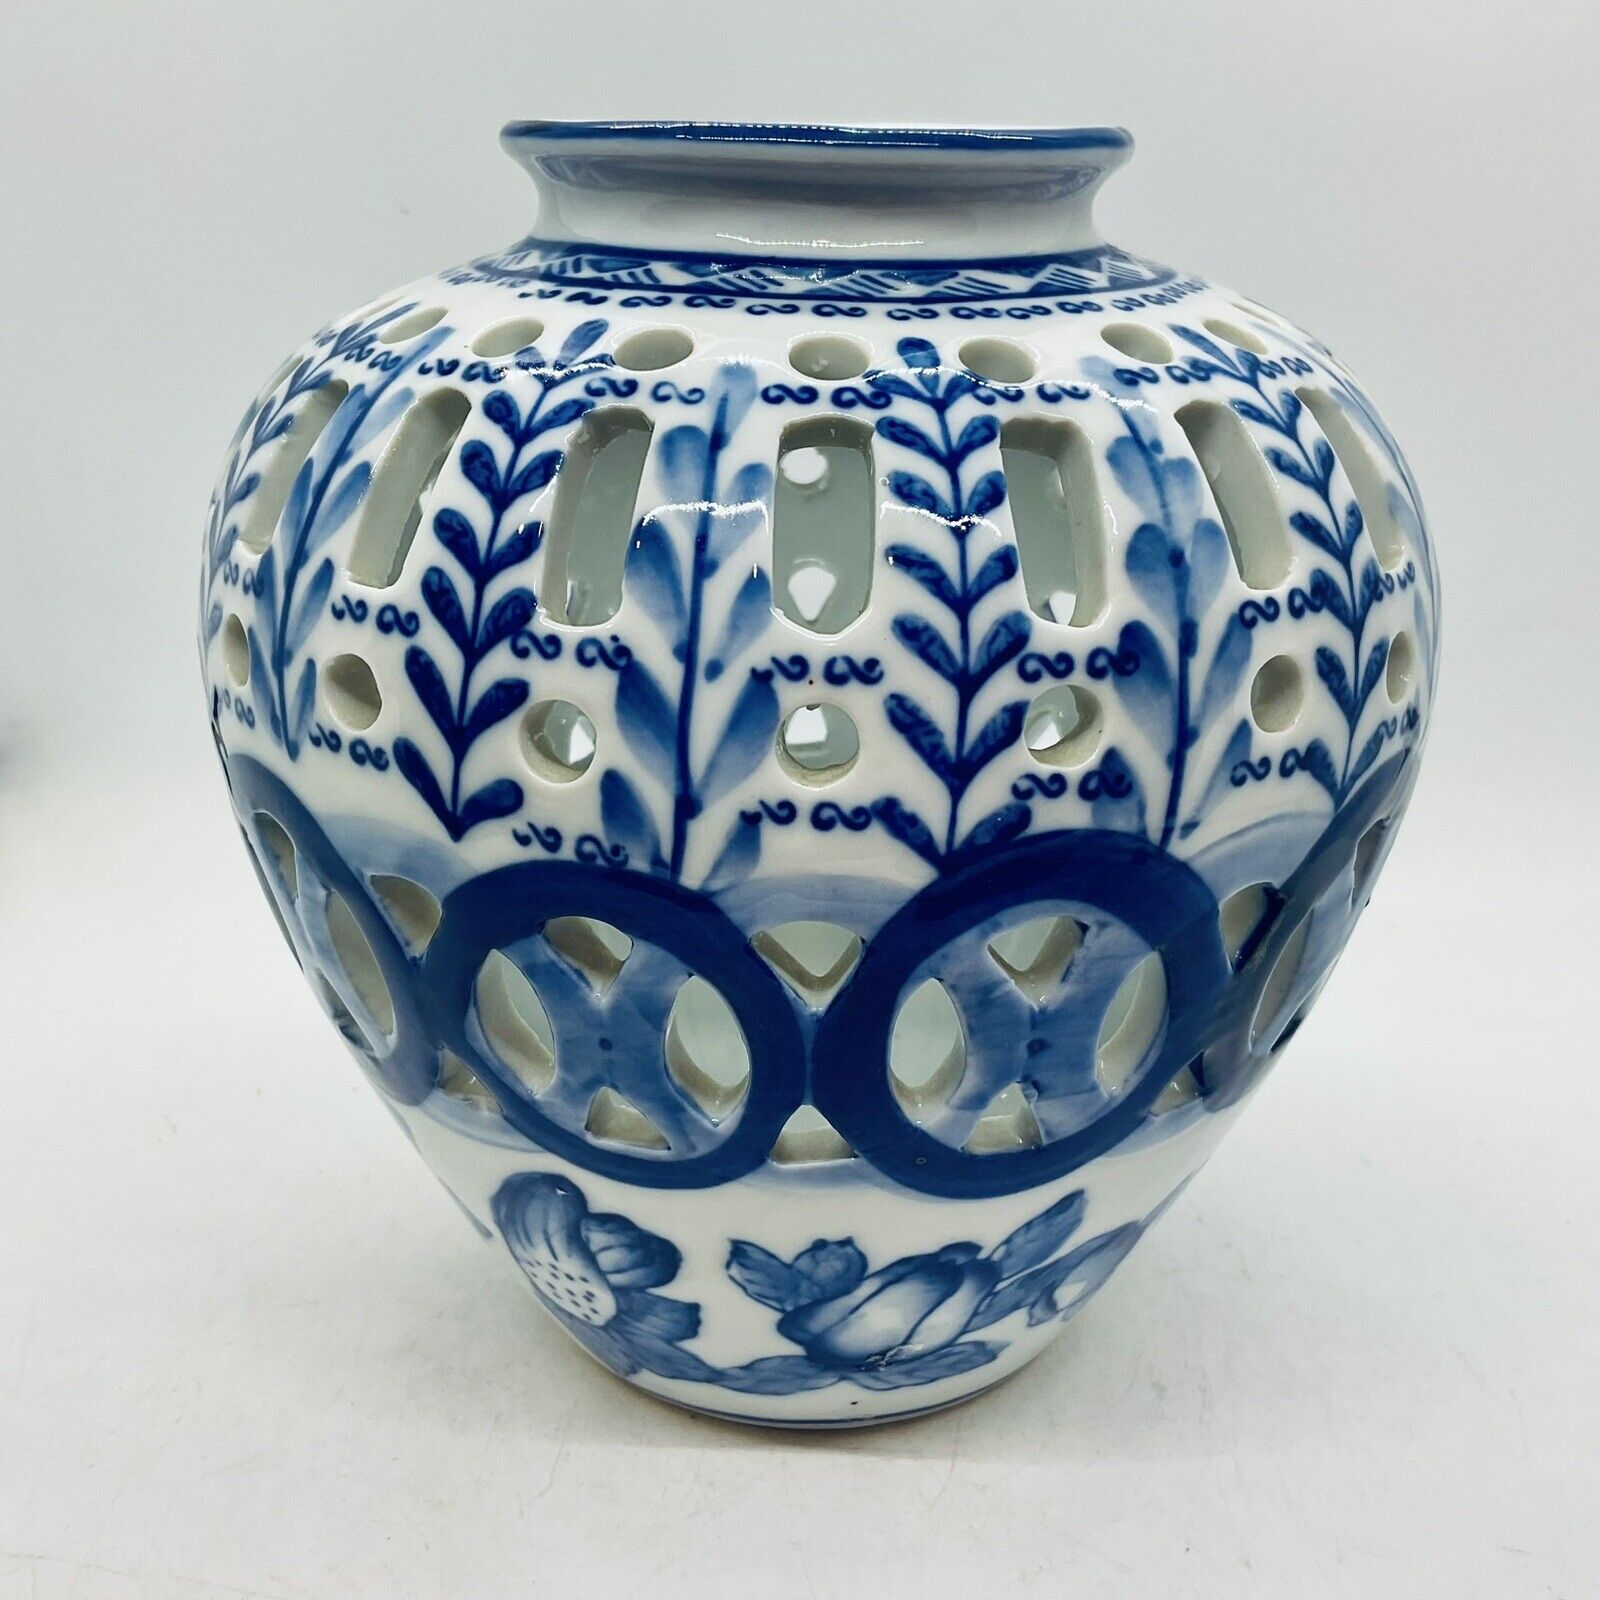 VTG Blue&White Cut Out&Floral Leaf Design Ceramic Vase Display Jar 7” Tall China